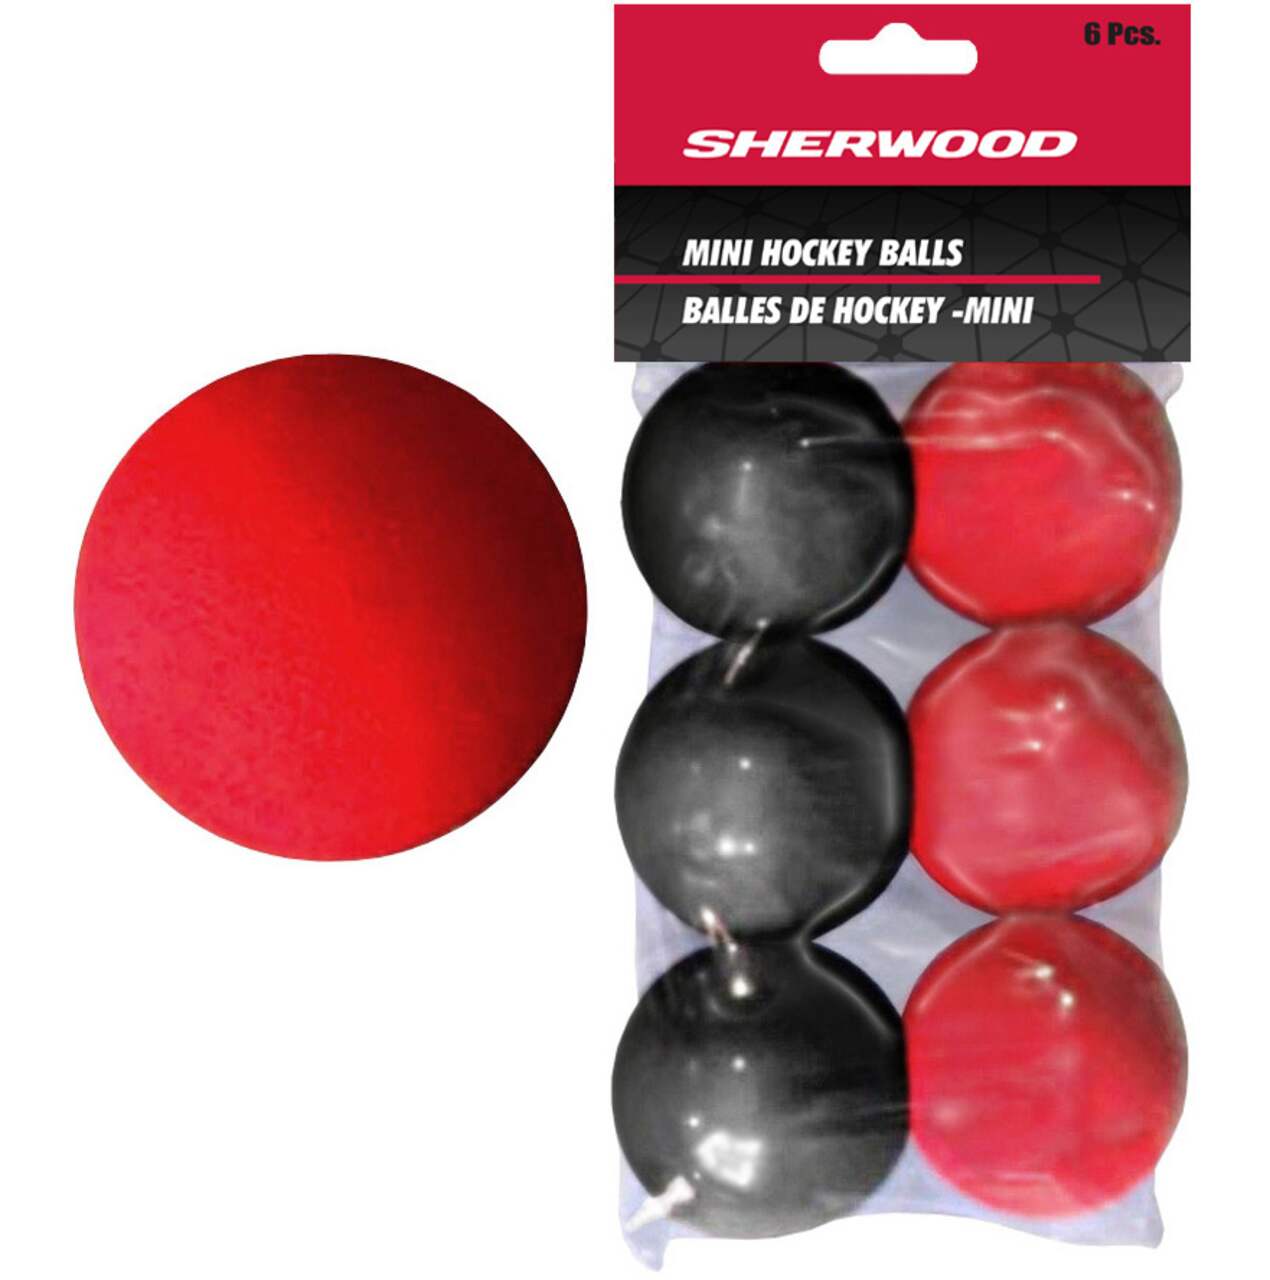 Mini balles de hockey de ruelle en mousse Sherwood, rouge/noir, paq. 6